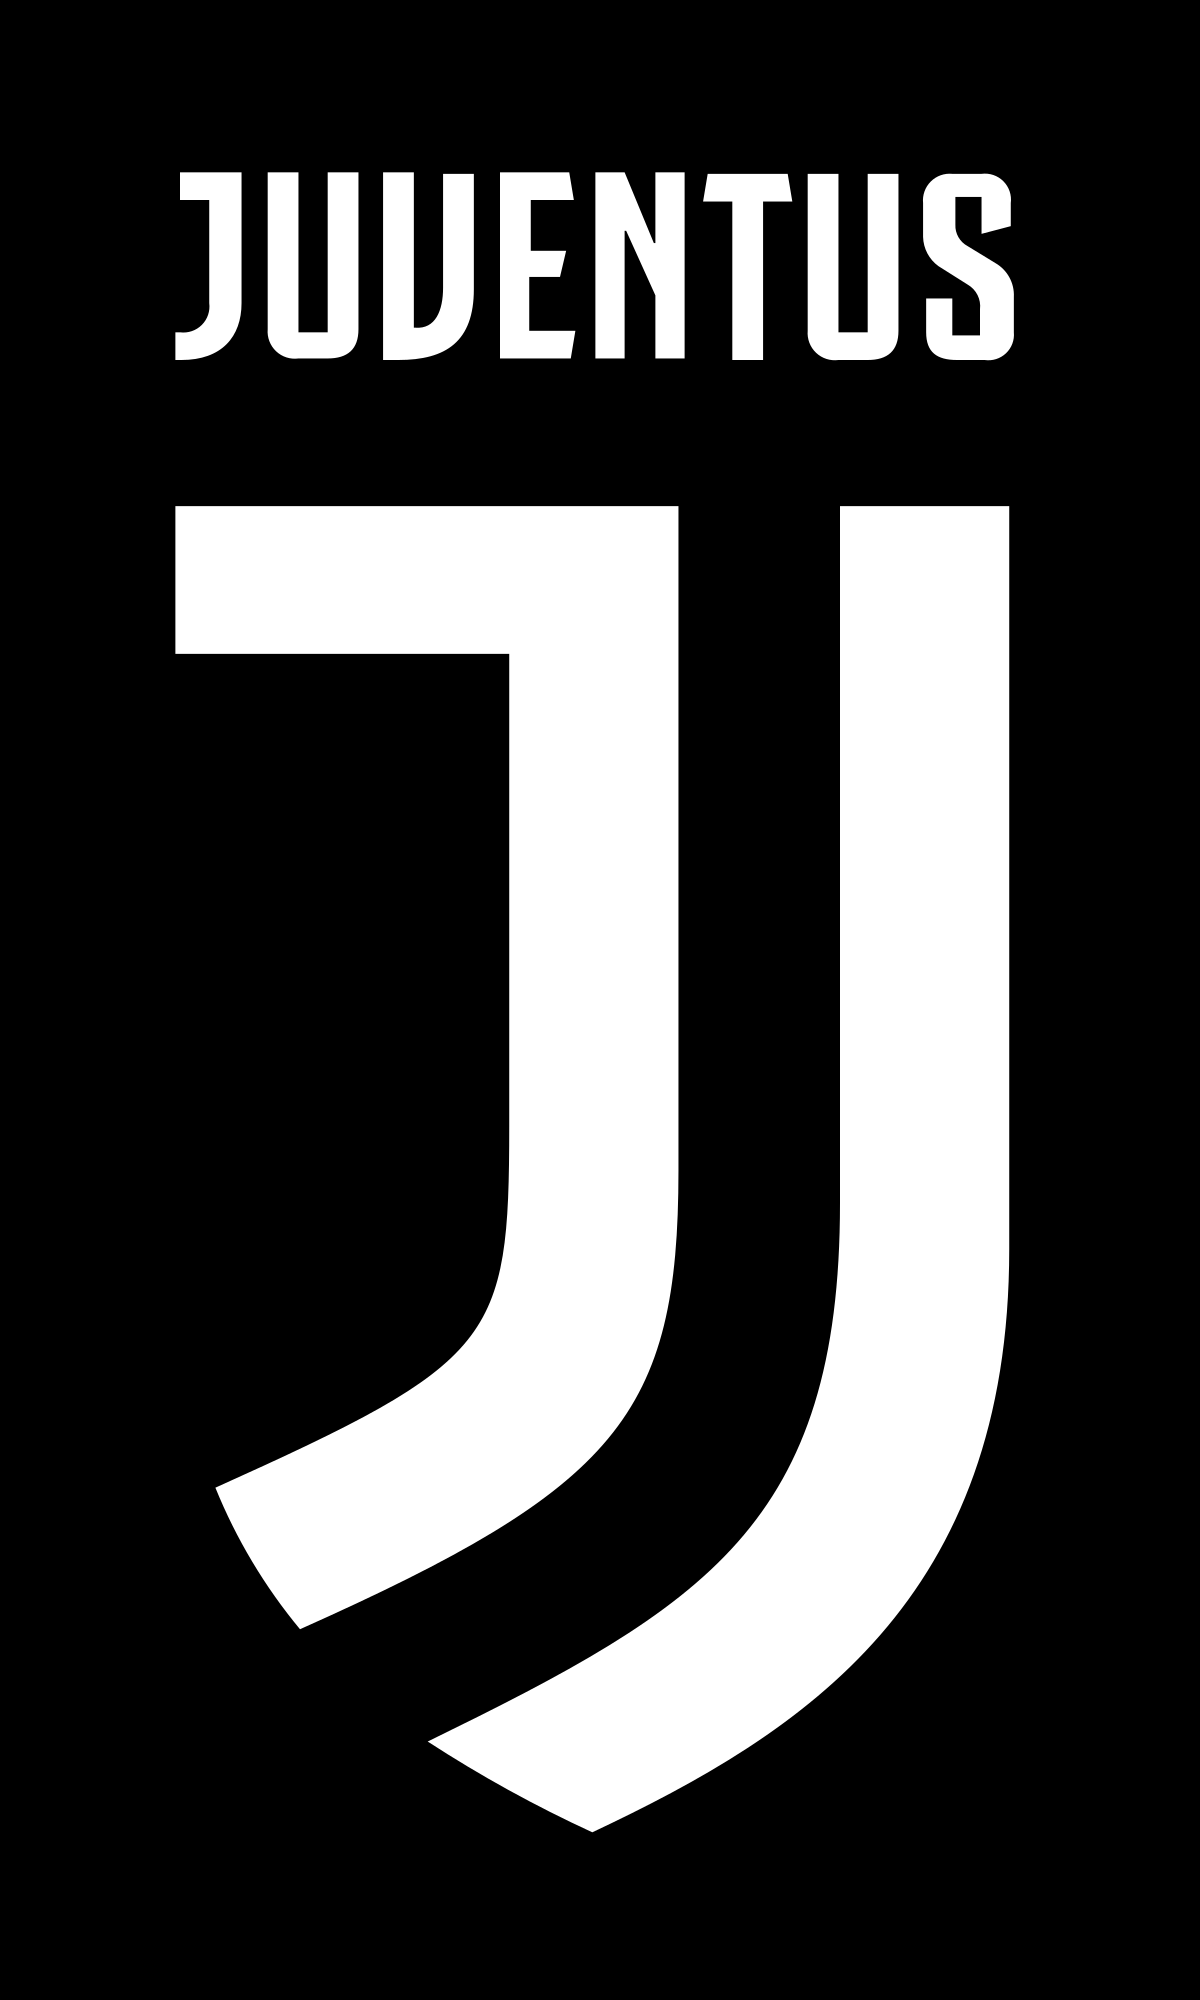 Juventus IF - Wikipedia